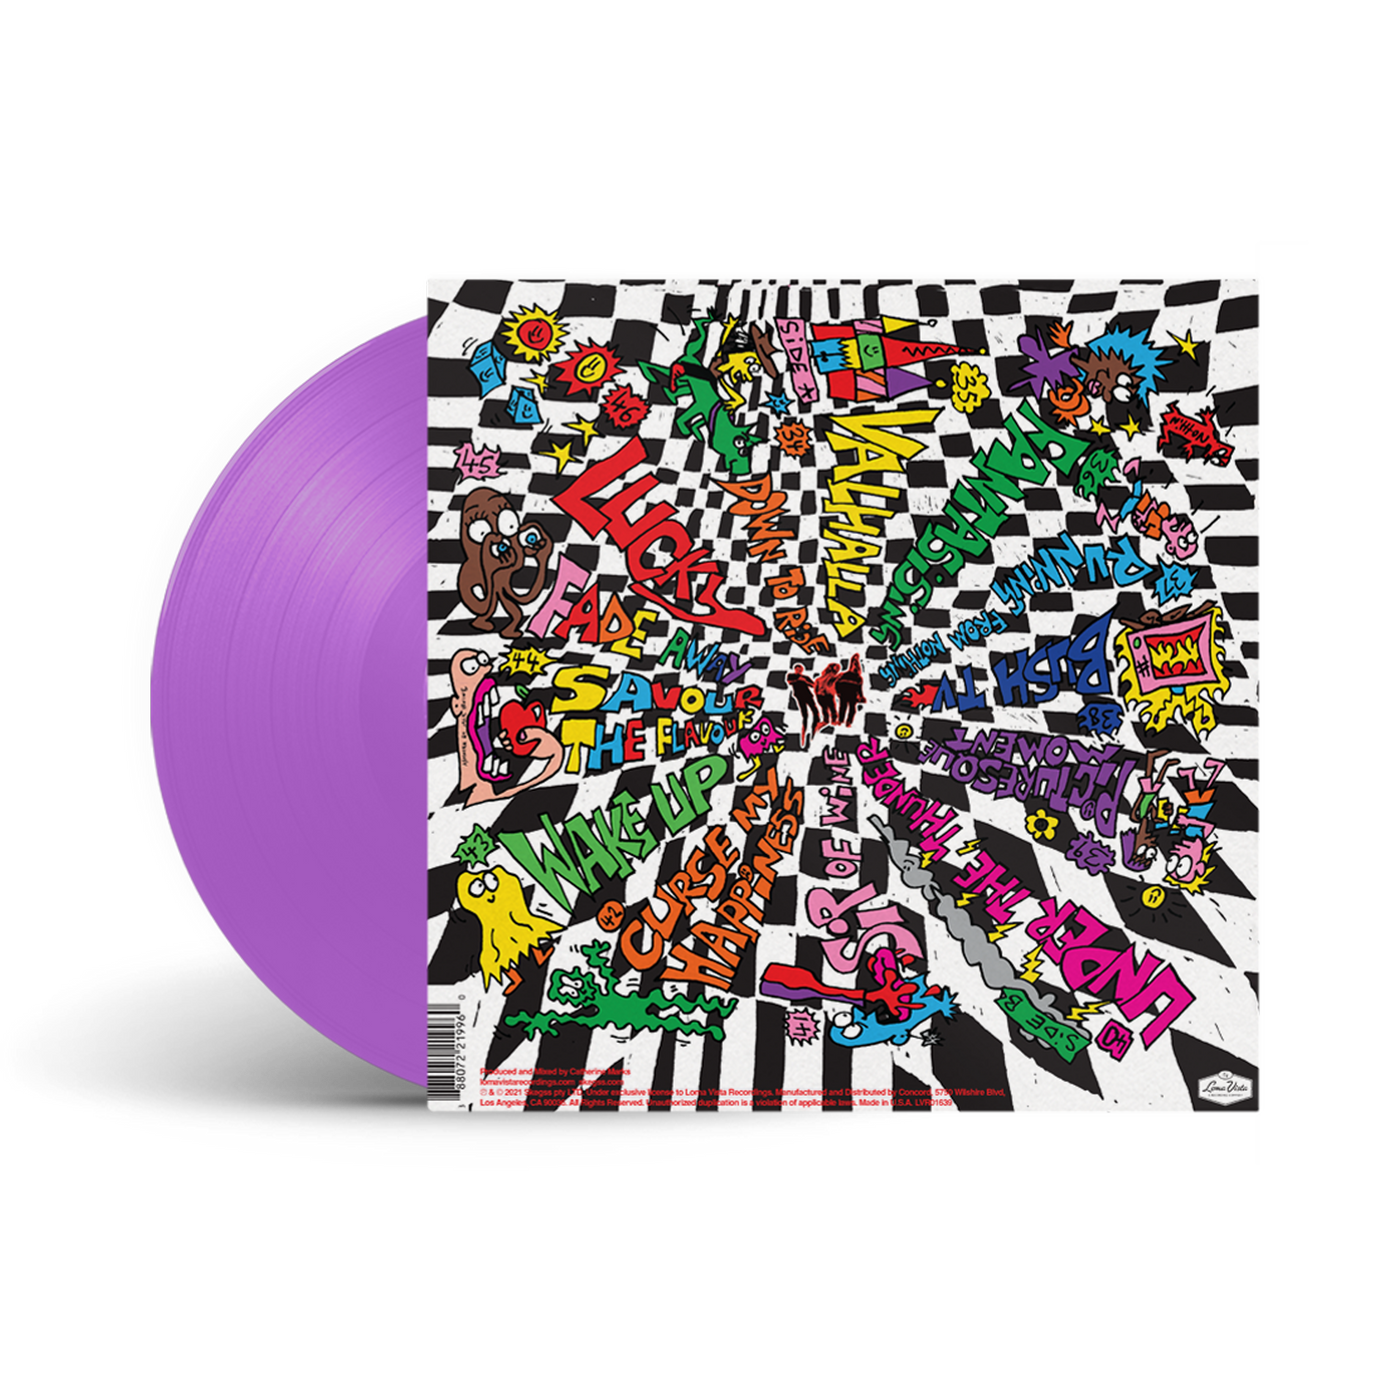 Rehearsal Deluxe LP (LV Exclusive Purple Vinyl)